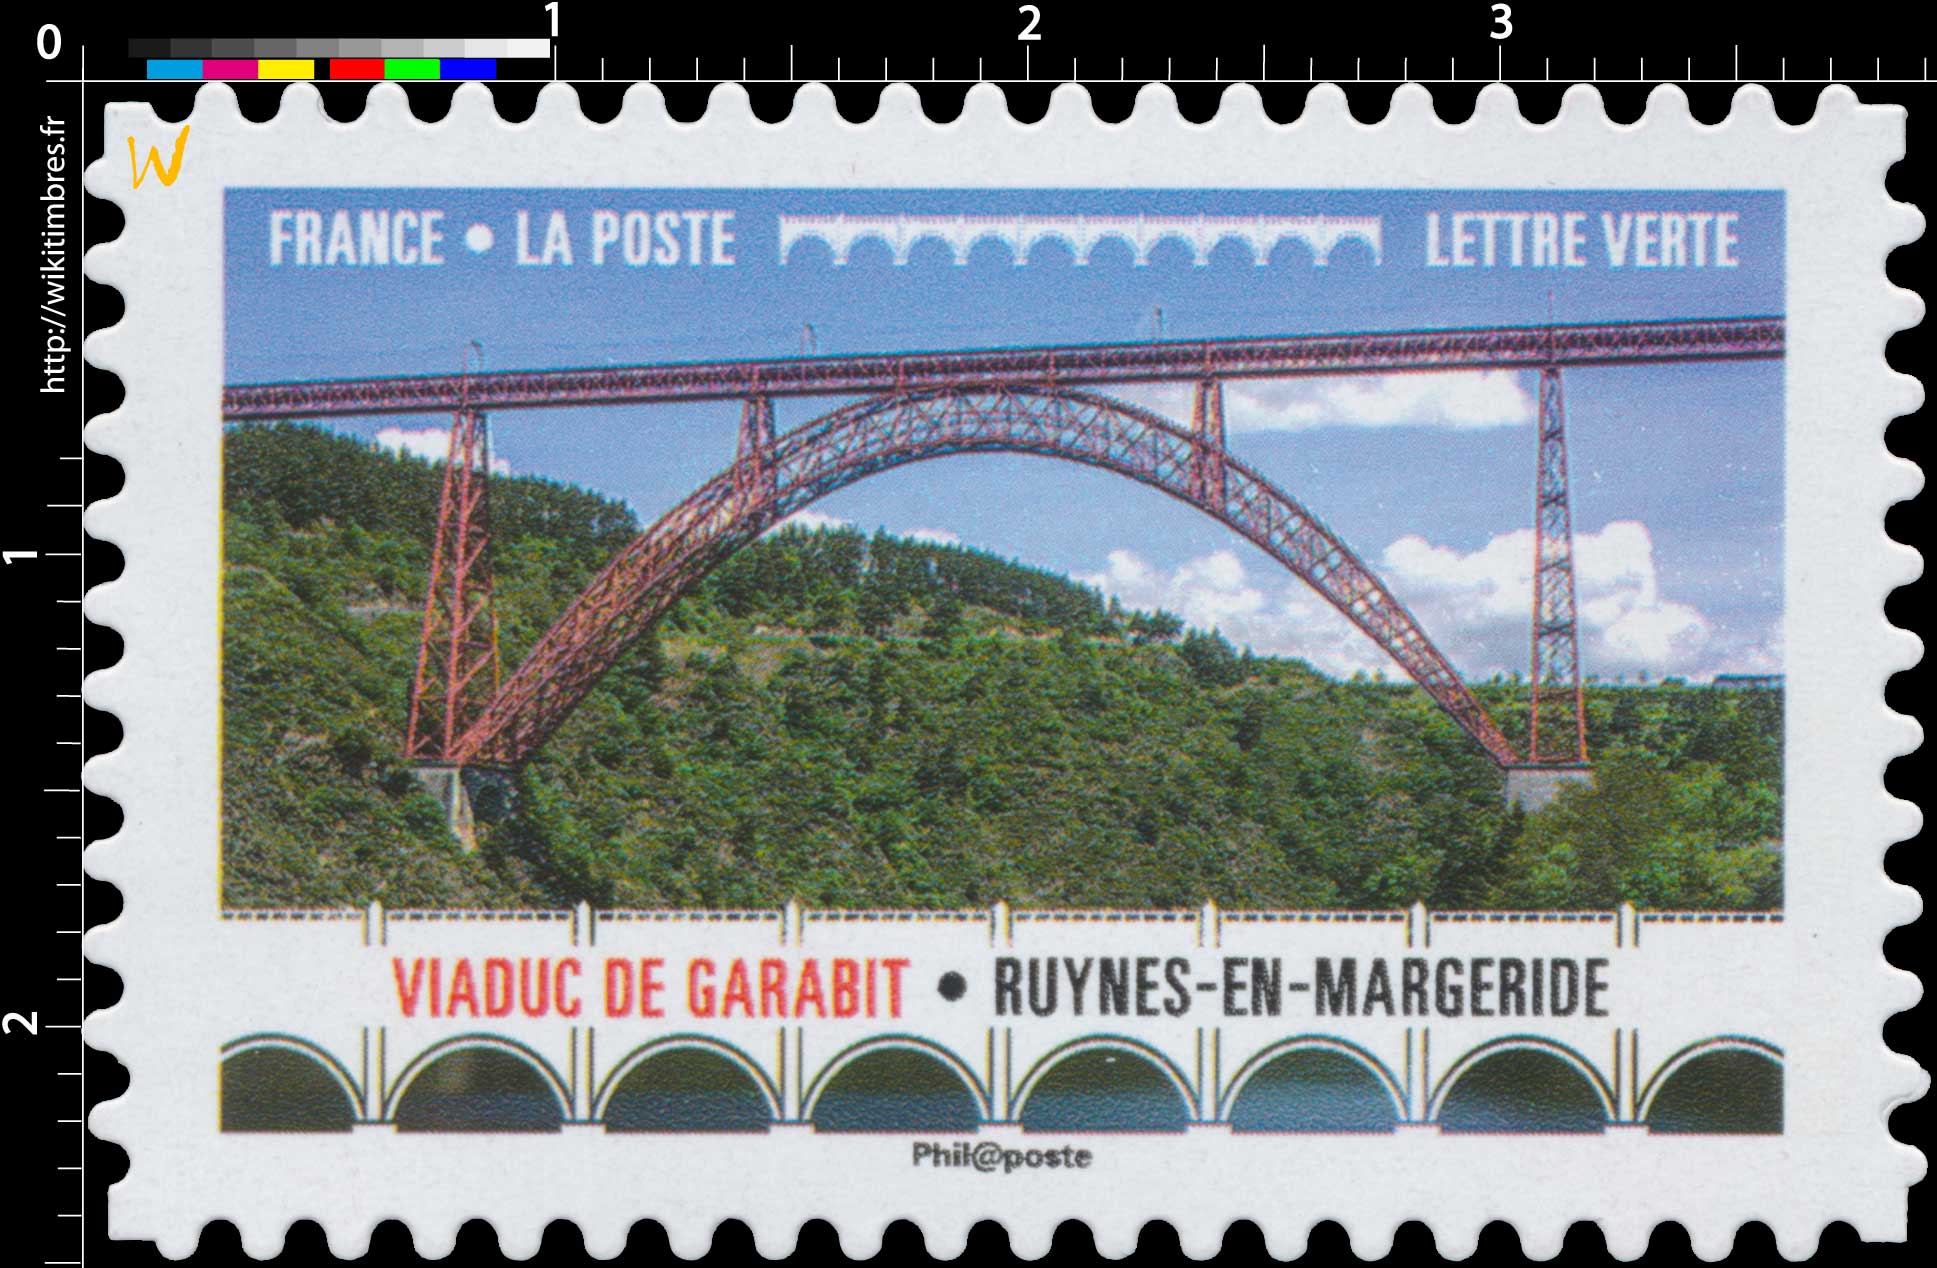 2017 Viaduc de Garabit - Ruynes-en-Margeride